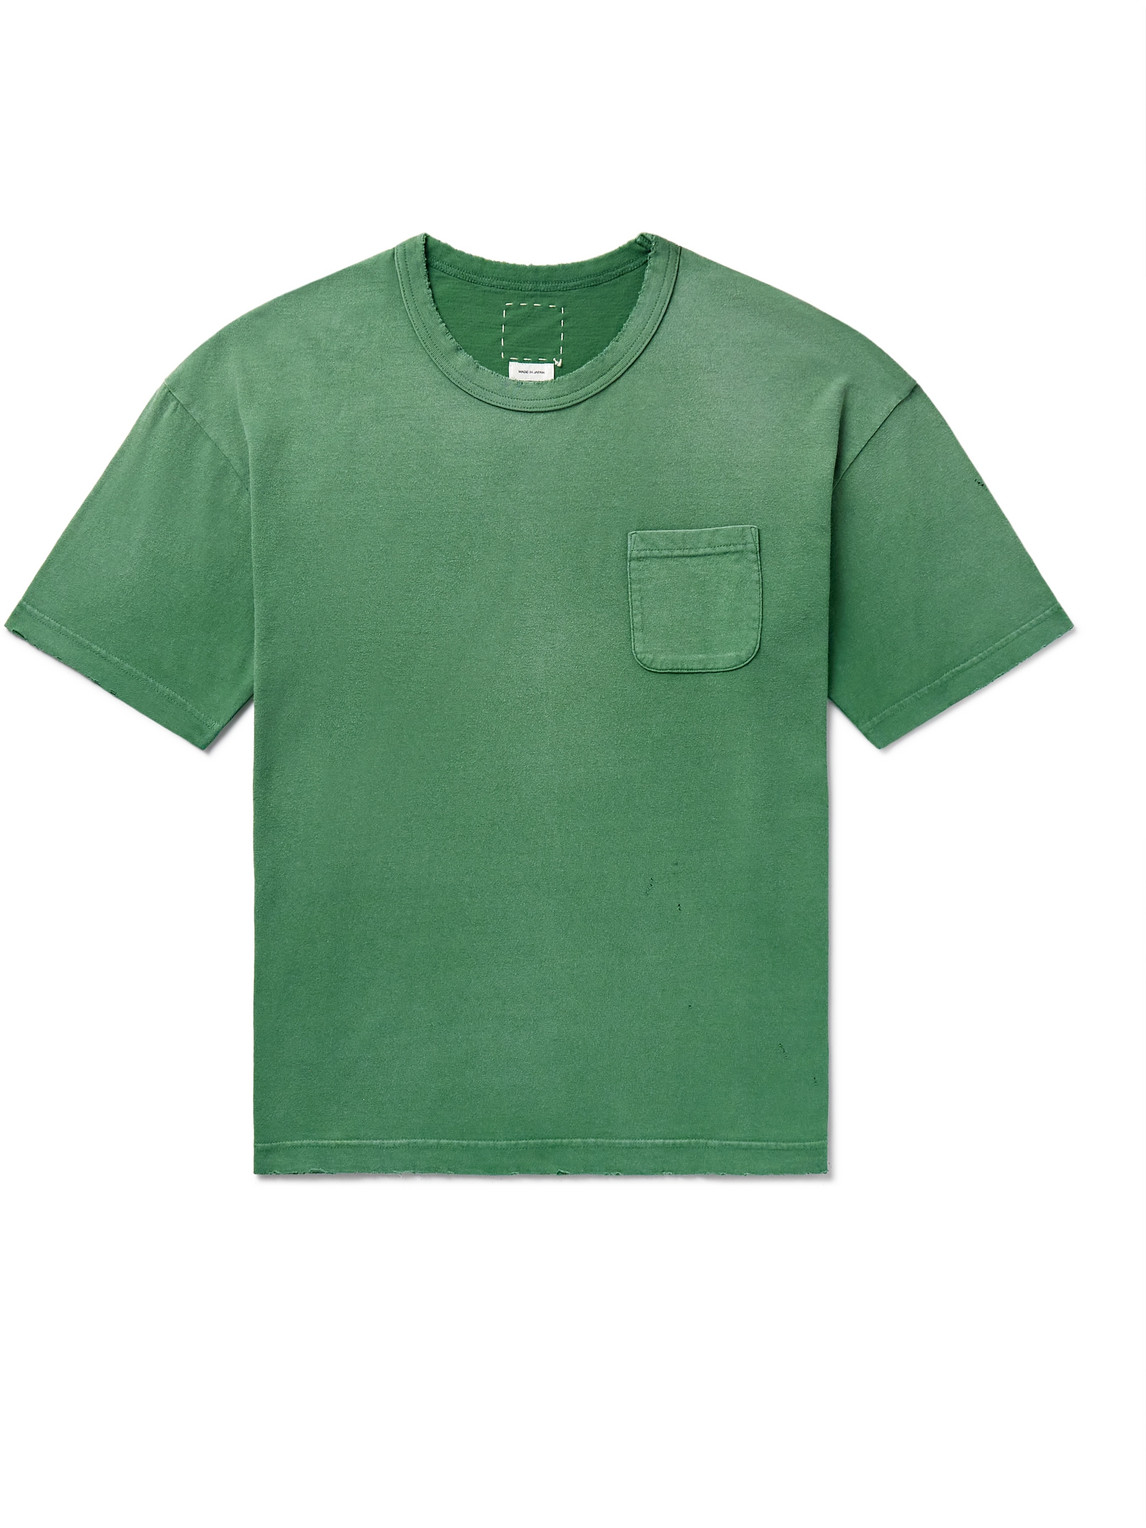 Visvim - Jumbo Distressed Garment-Dyed Cotton-Jersey T-Shirt - Men - Green - 1 von Visvim